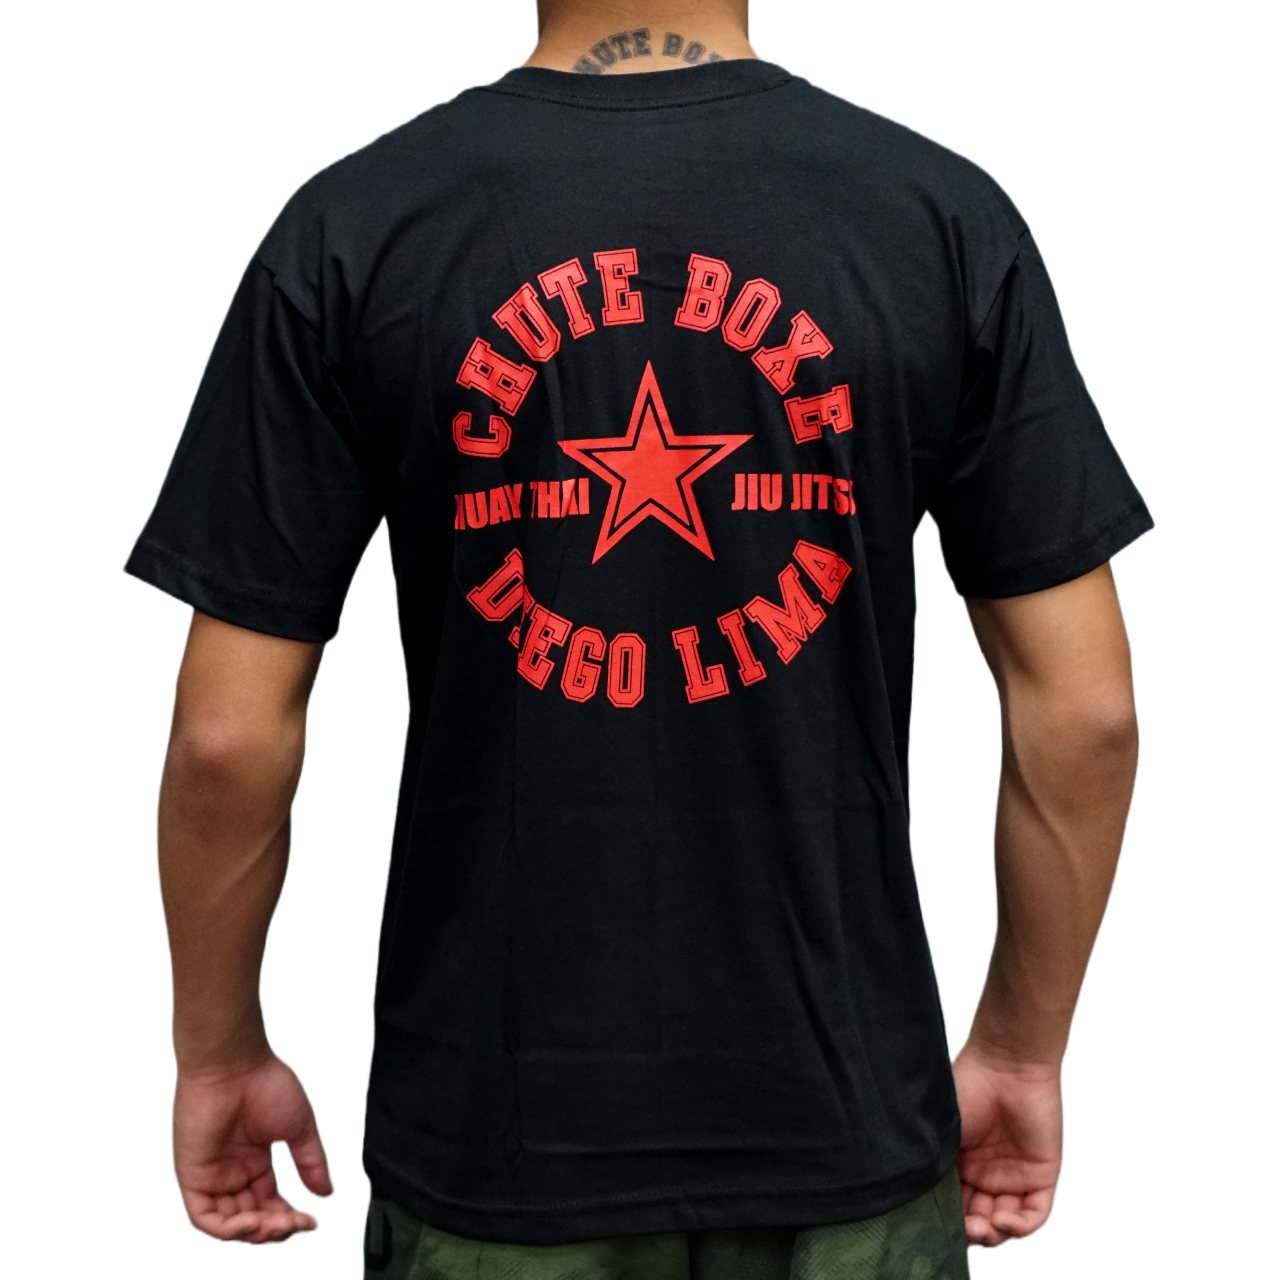 Camiseta Muay Thai Jiu Jtisu Chute Boxe Diego Lima Preta com Vermelho